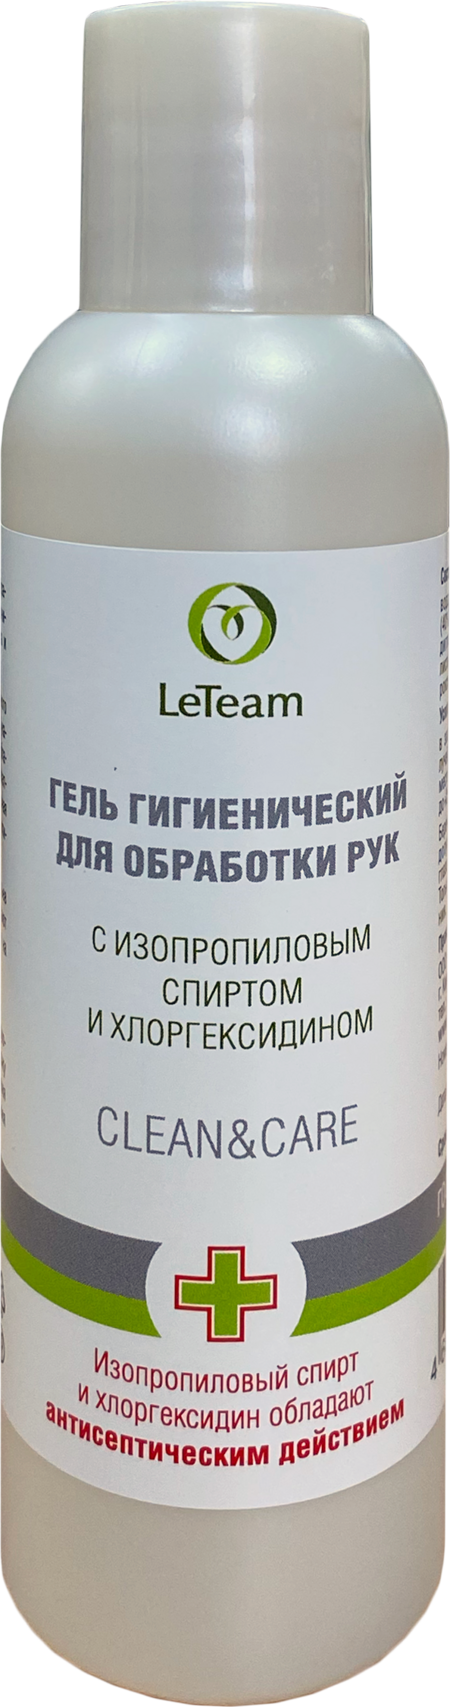 LETEAM CLEAN & CARE 150 мл гель гигиенический для обработки рук с изопропиловым спиртом и хлоргексидином